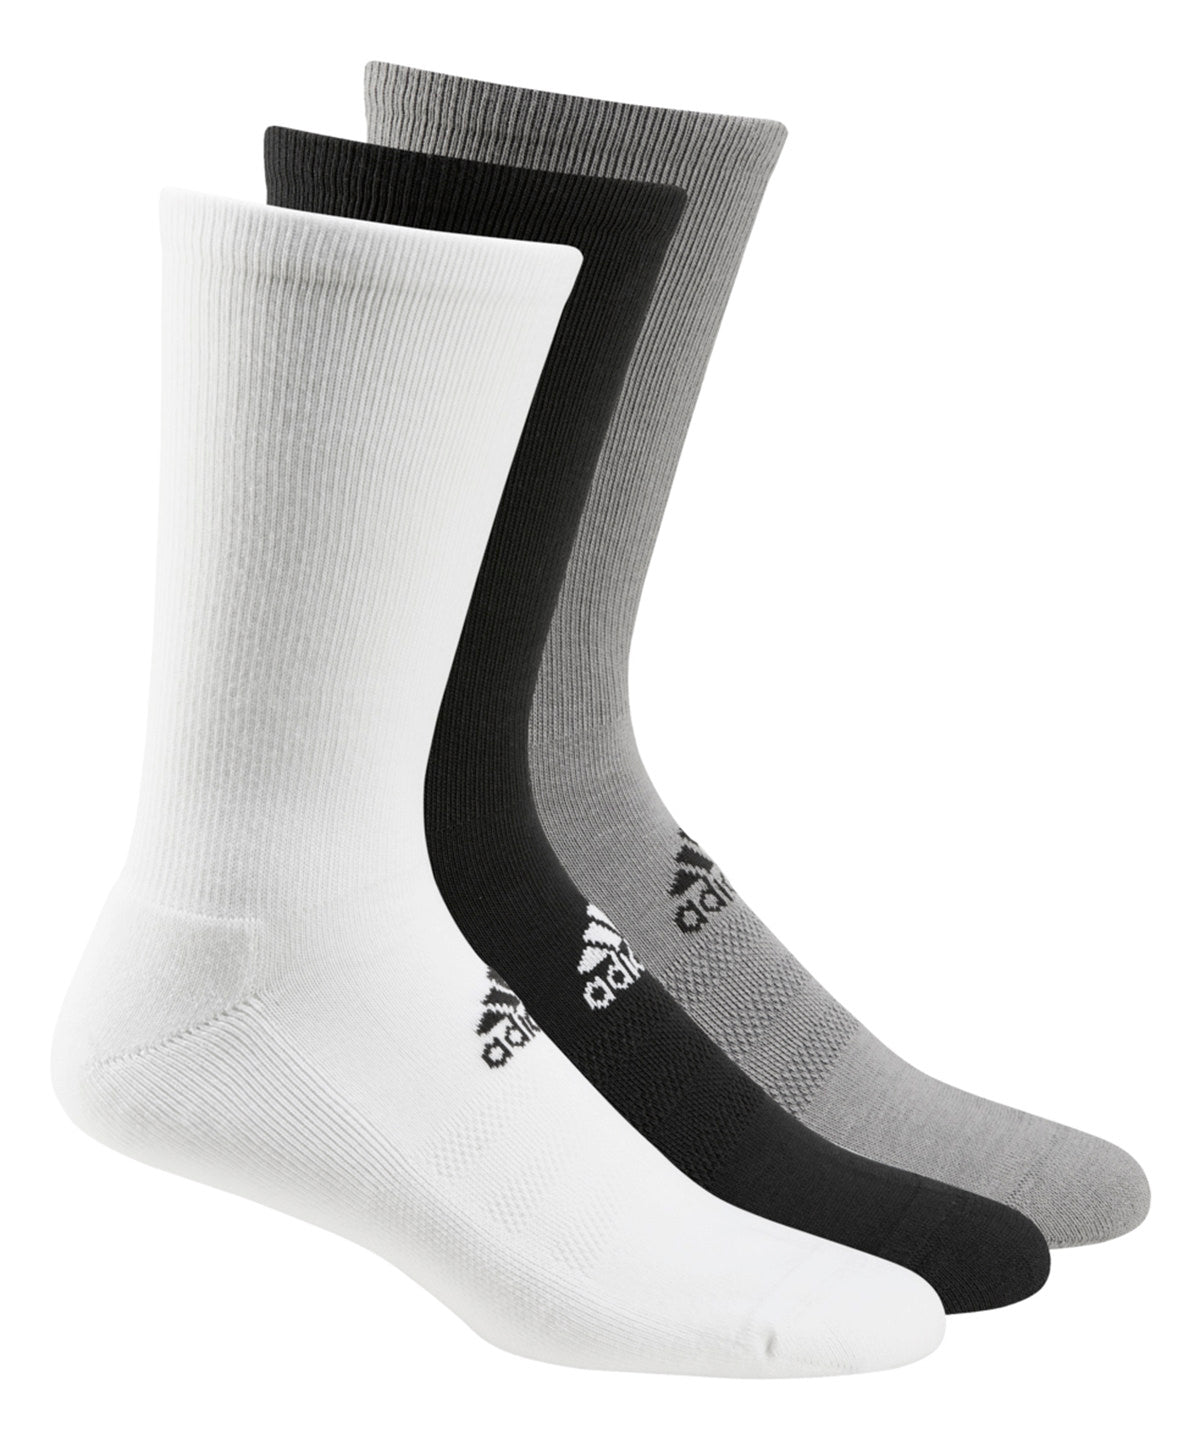 Strümpfe - Socken